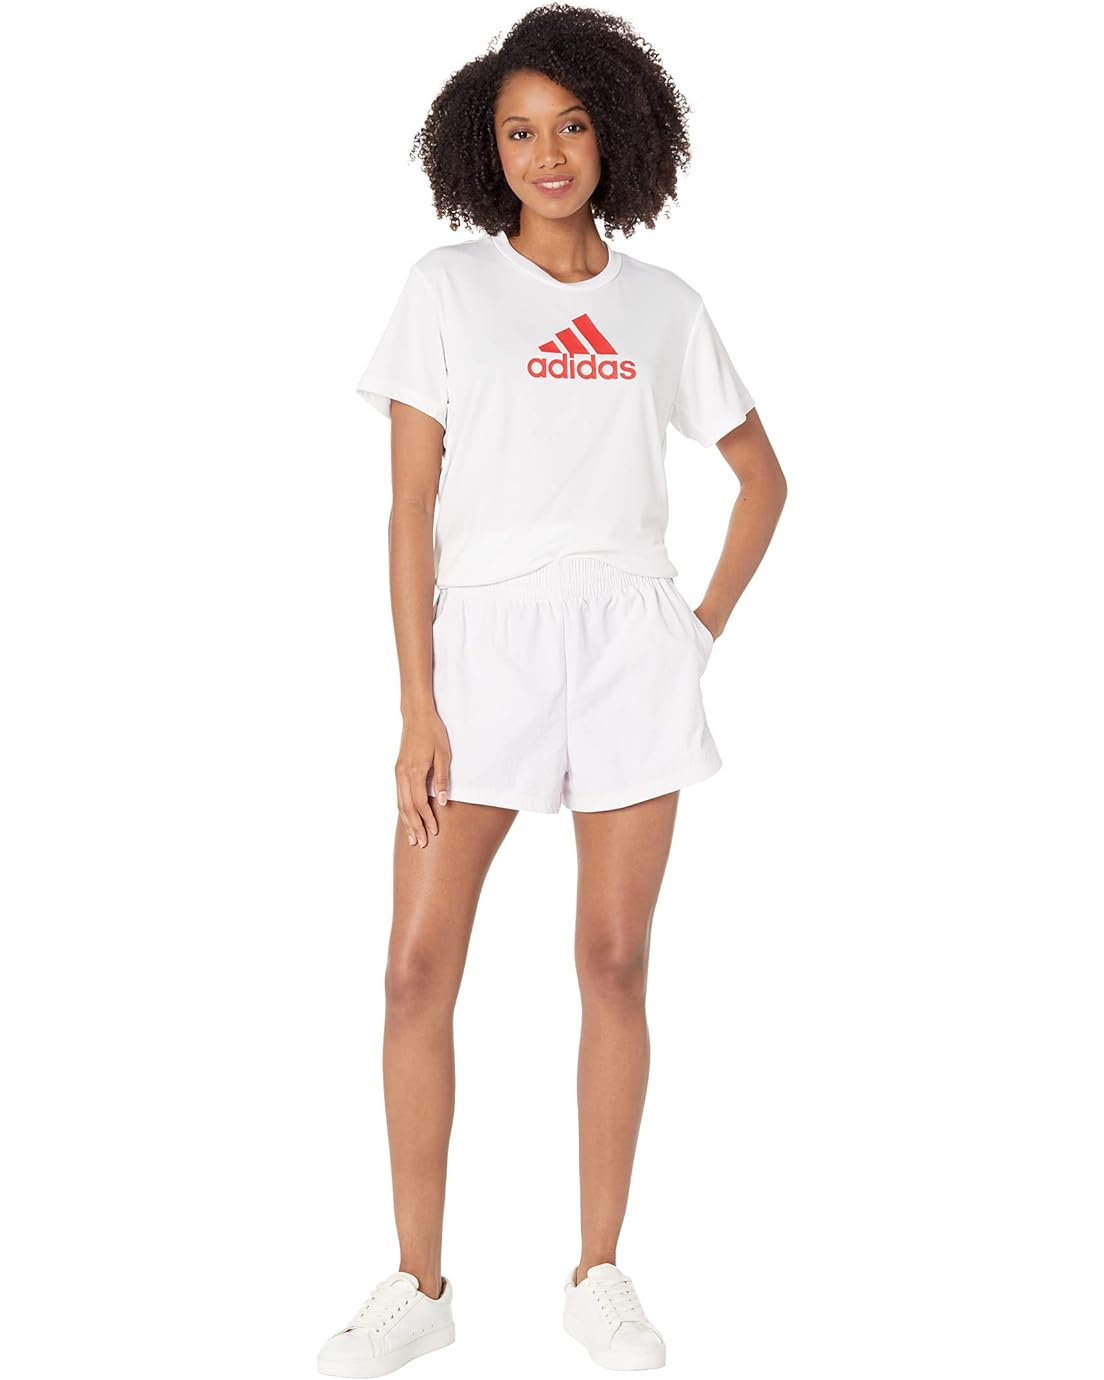 아디다스 adidas Brand Love Q2 3-Stripes Woven Shorts